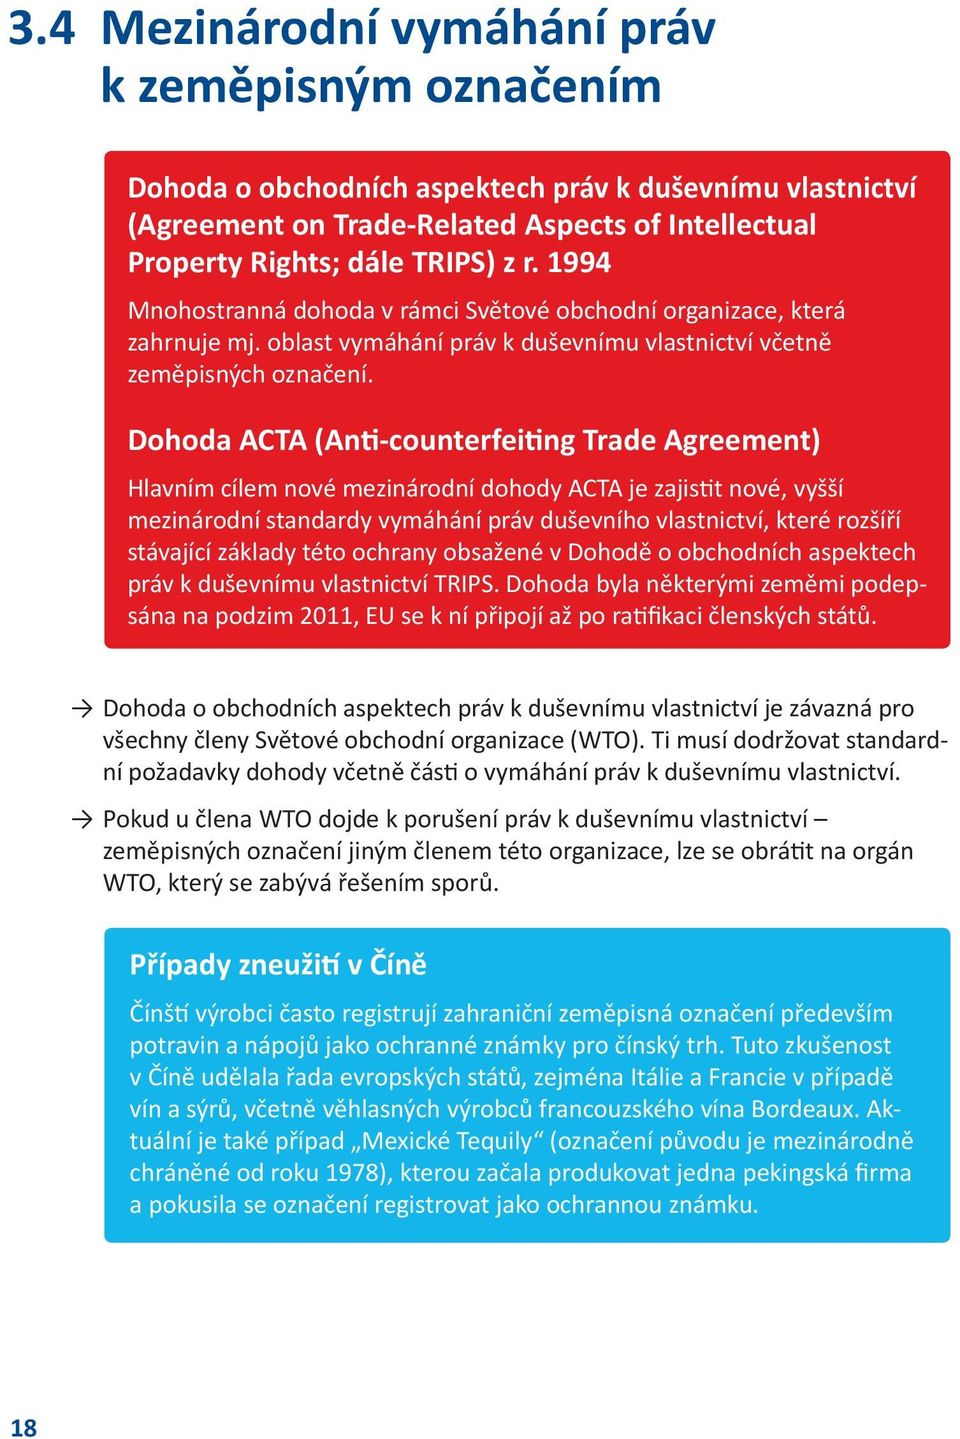 Dohoda ACTA (Anti-counterfeiting Trade Agreement) Hlavním cílem nové mezinárodní dohody ACTA je zajistit nové, vyšší mezinárodní standardy vymáhání práv duševního vlastnictví, které rozšíří stávající